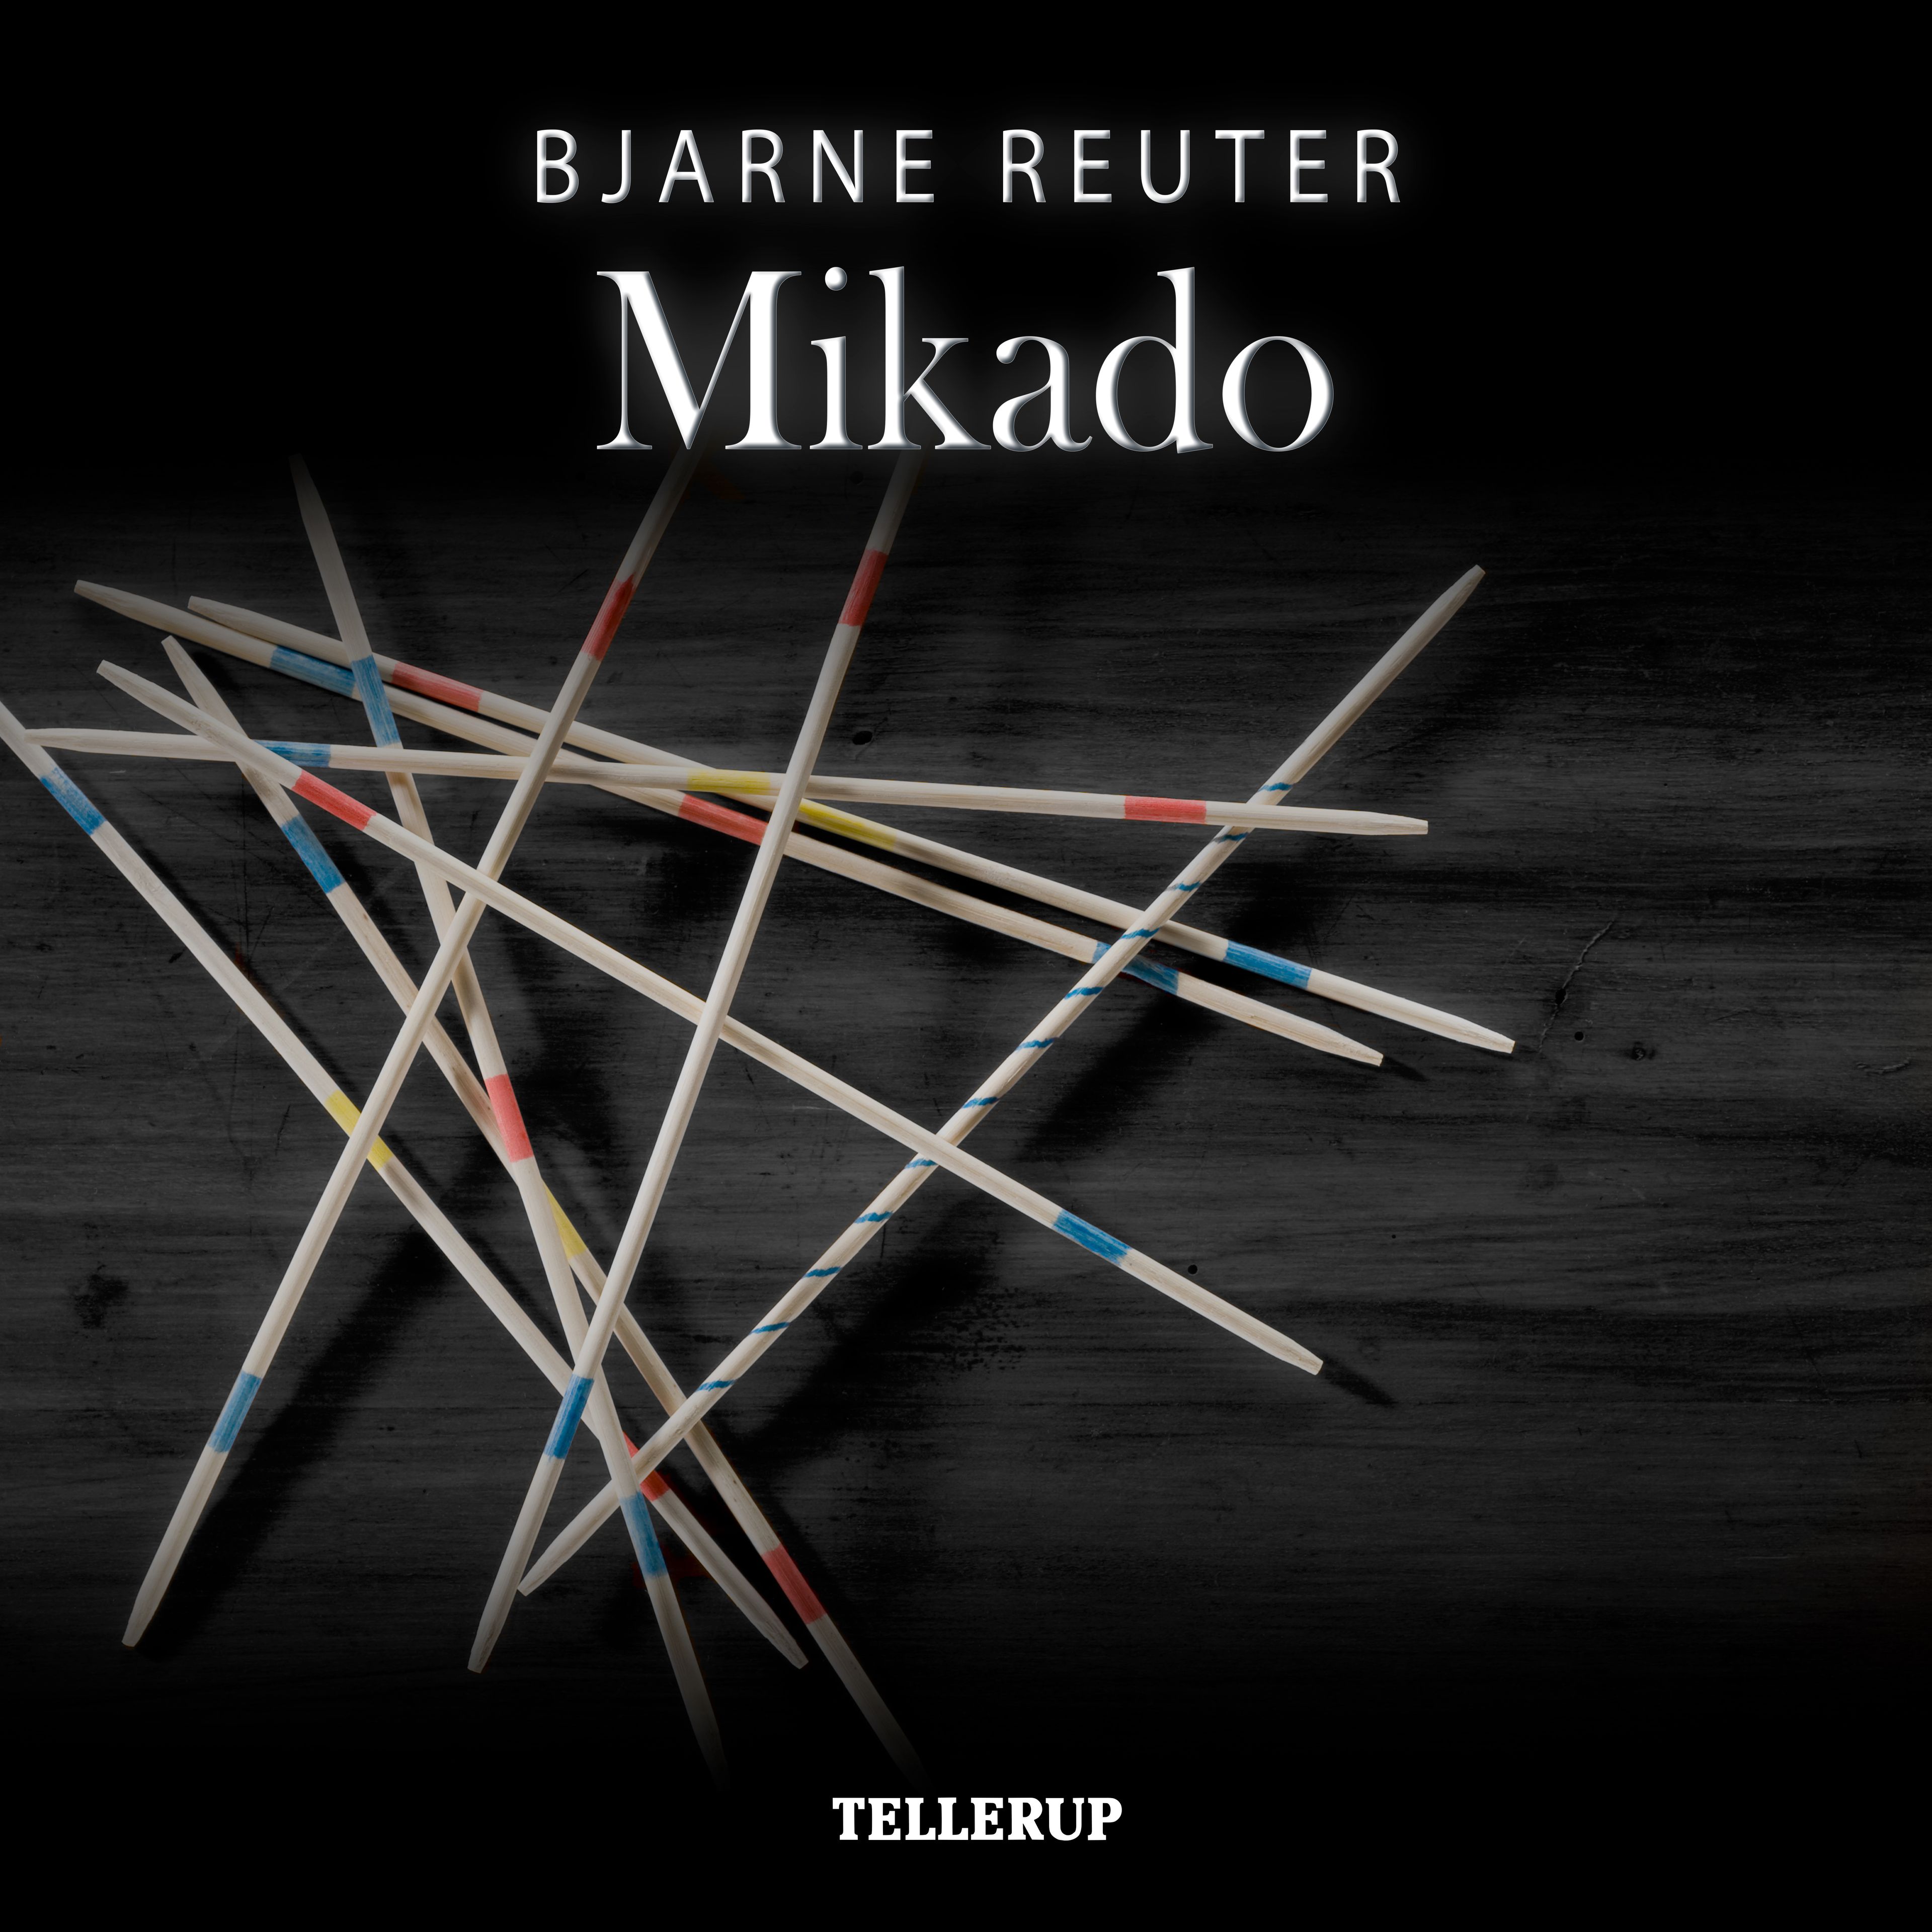 Mikado, lydbog af Bjarne Reuter